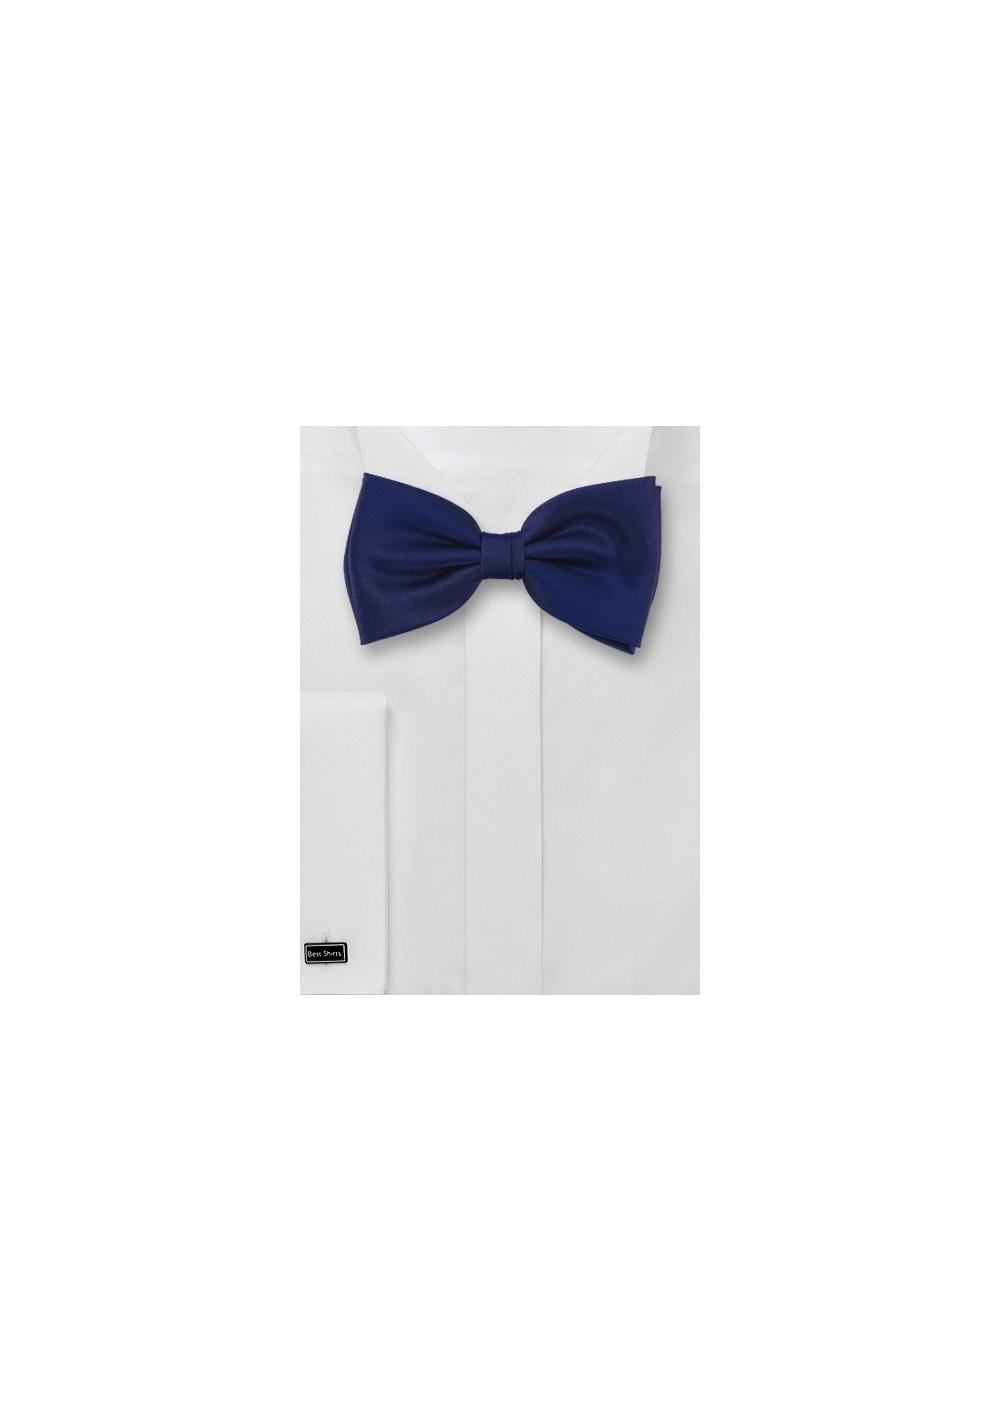 Dark blue bow tieBr Sapphire blue bow-tie